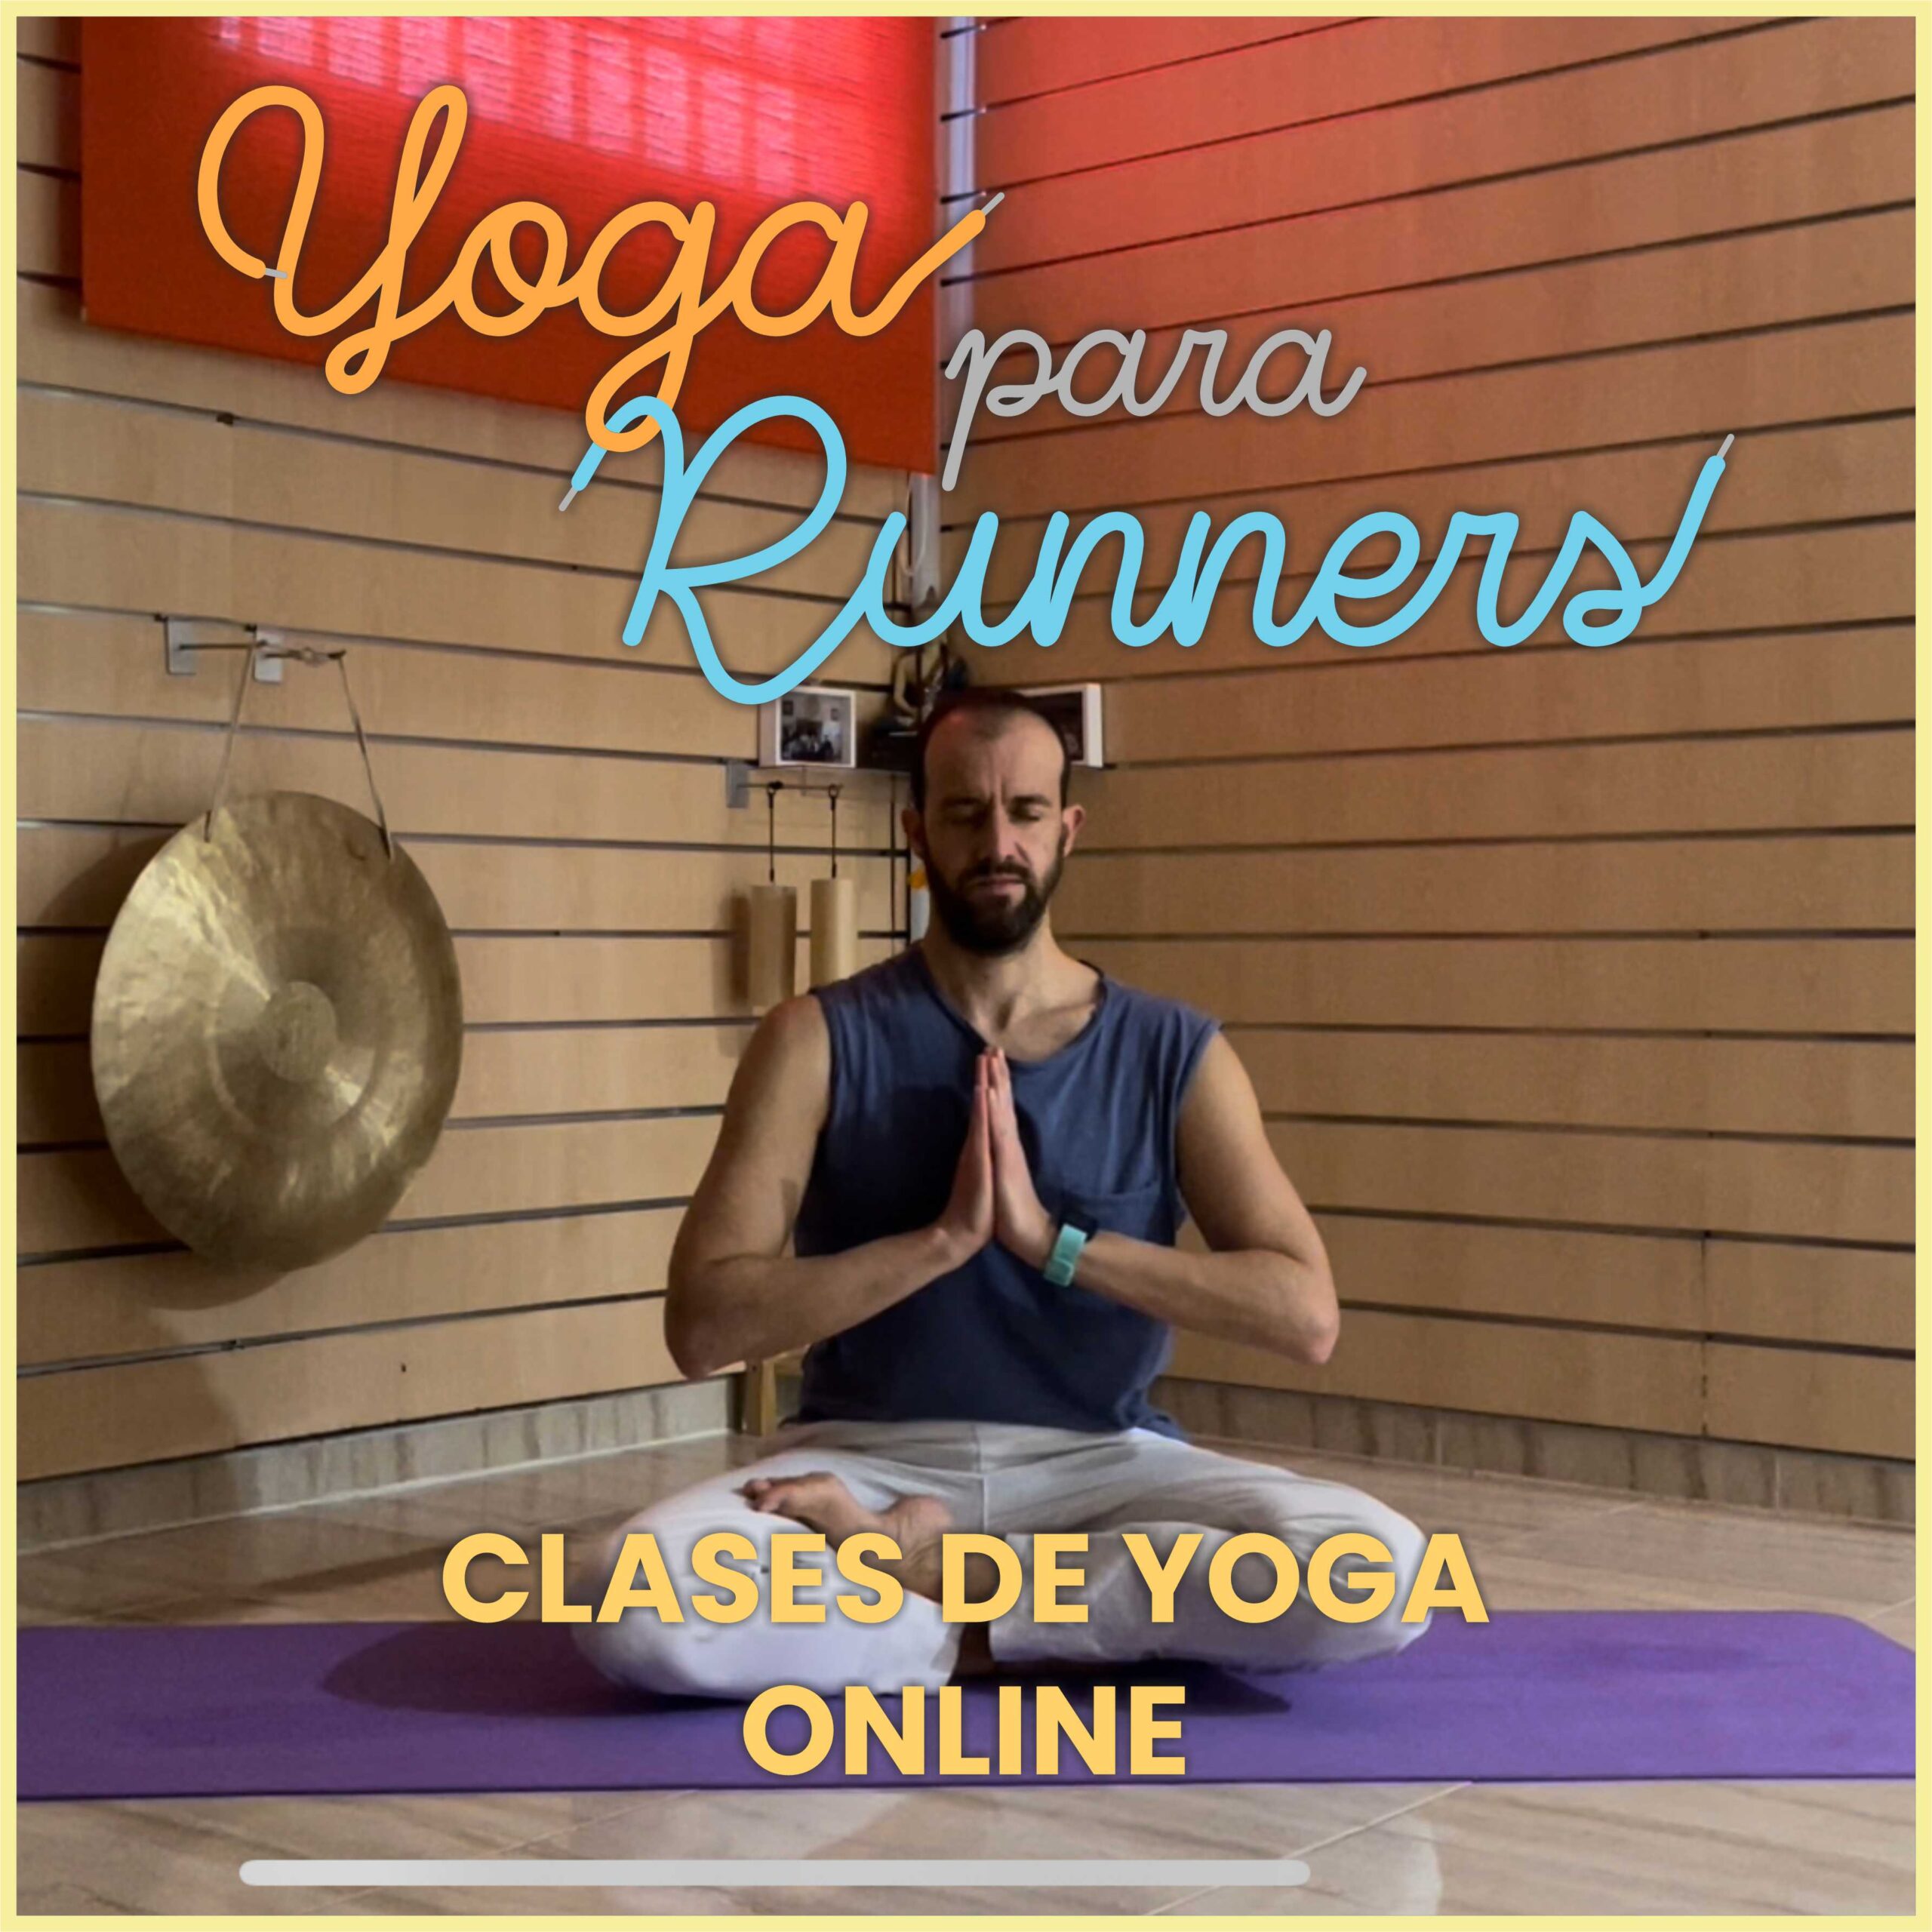 Clases de Yoga online